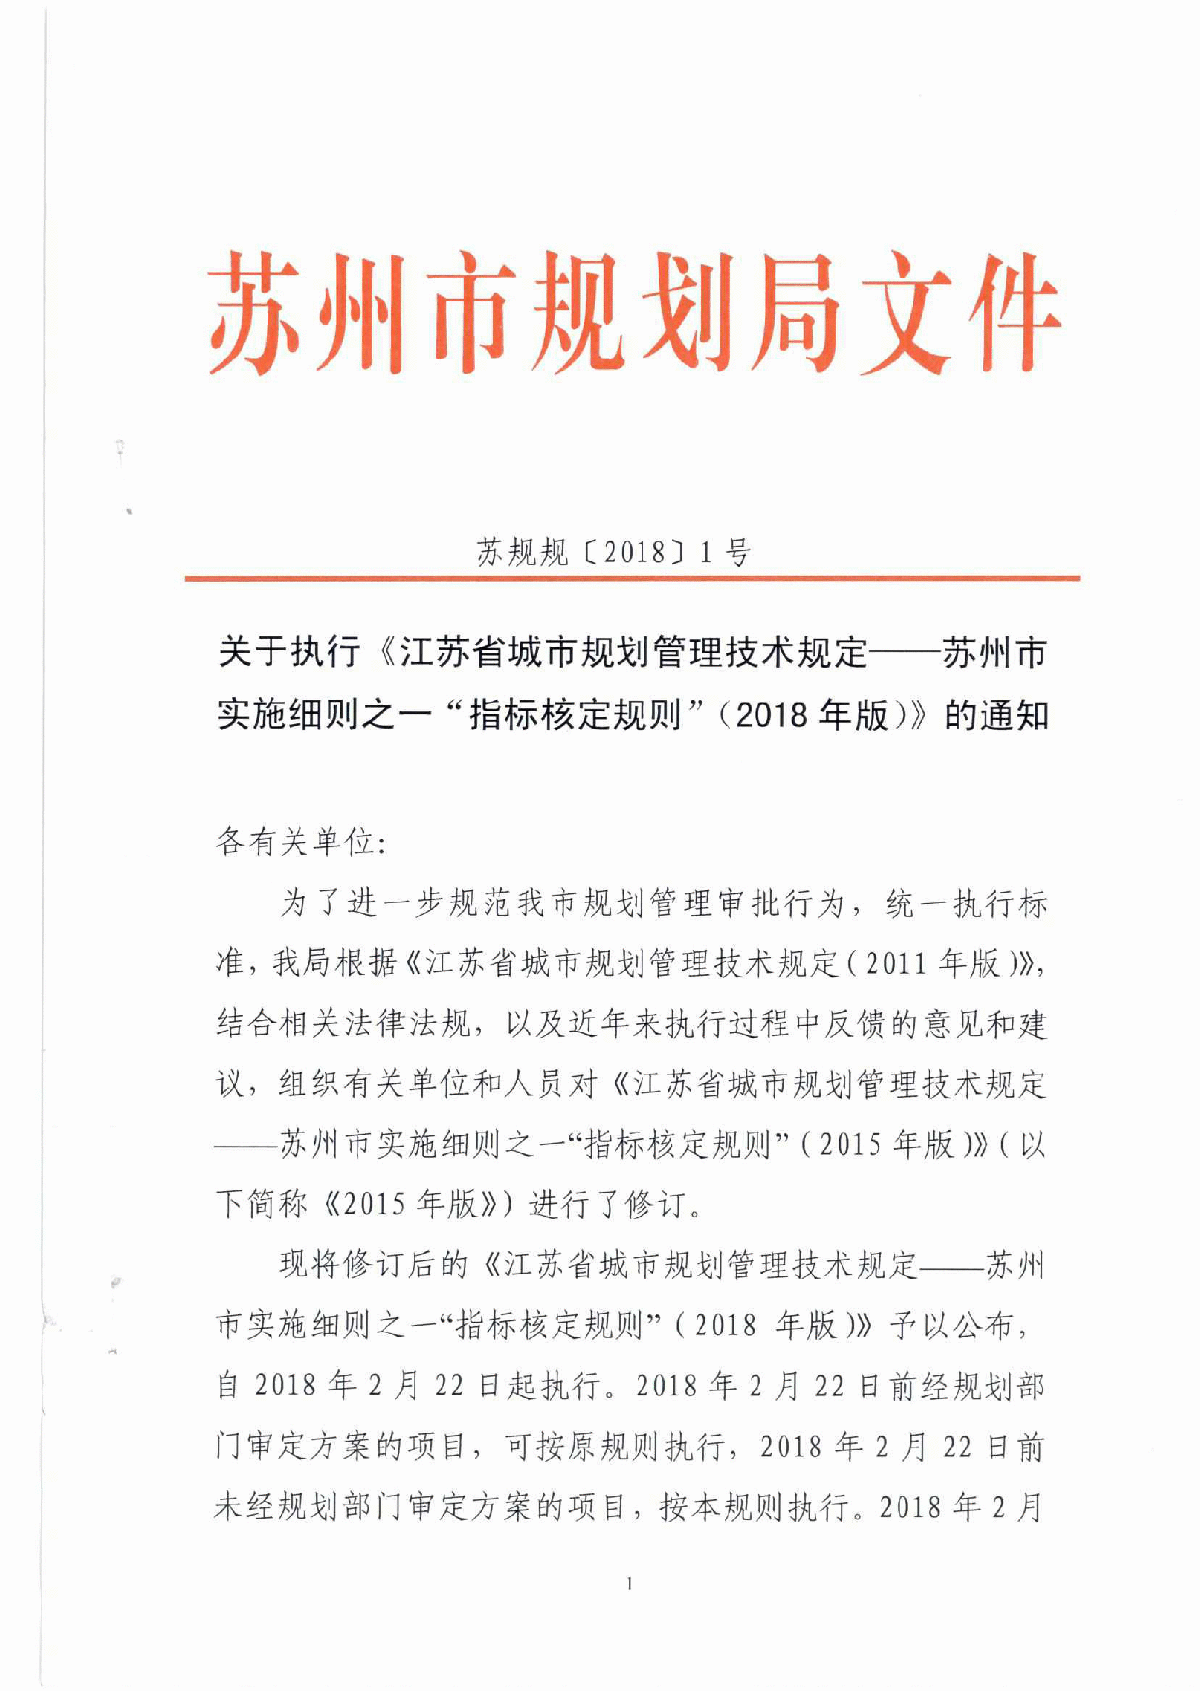 江苏省城市规划管理技术规定—苏州市实施细则之一“指标核定规则”（2018版）